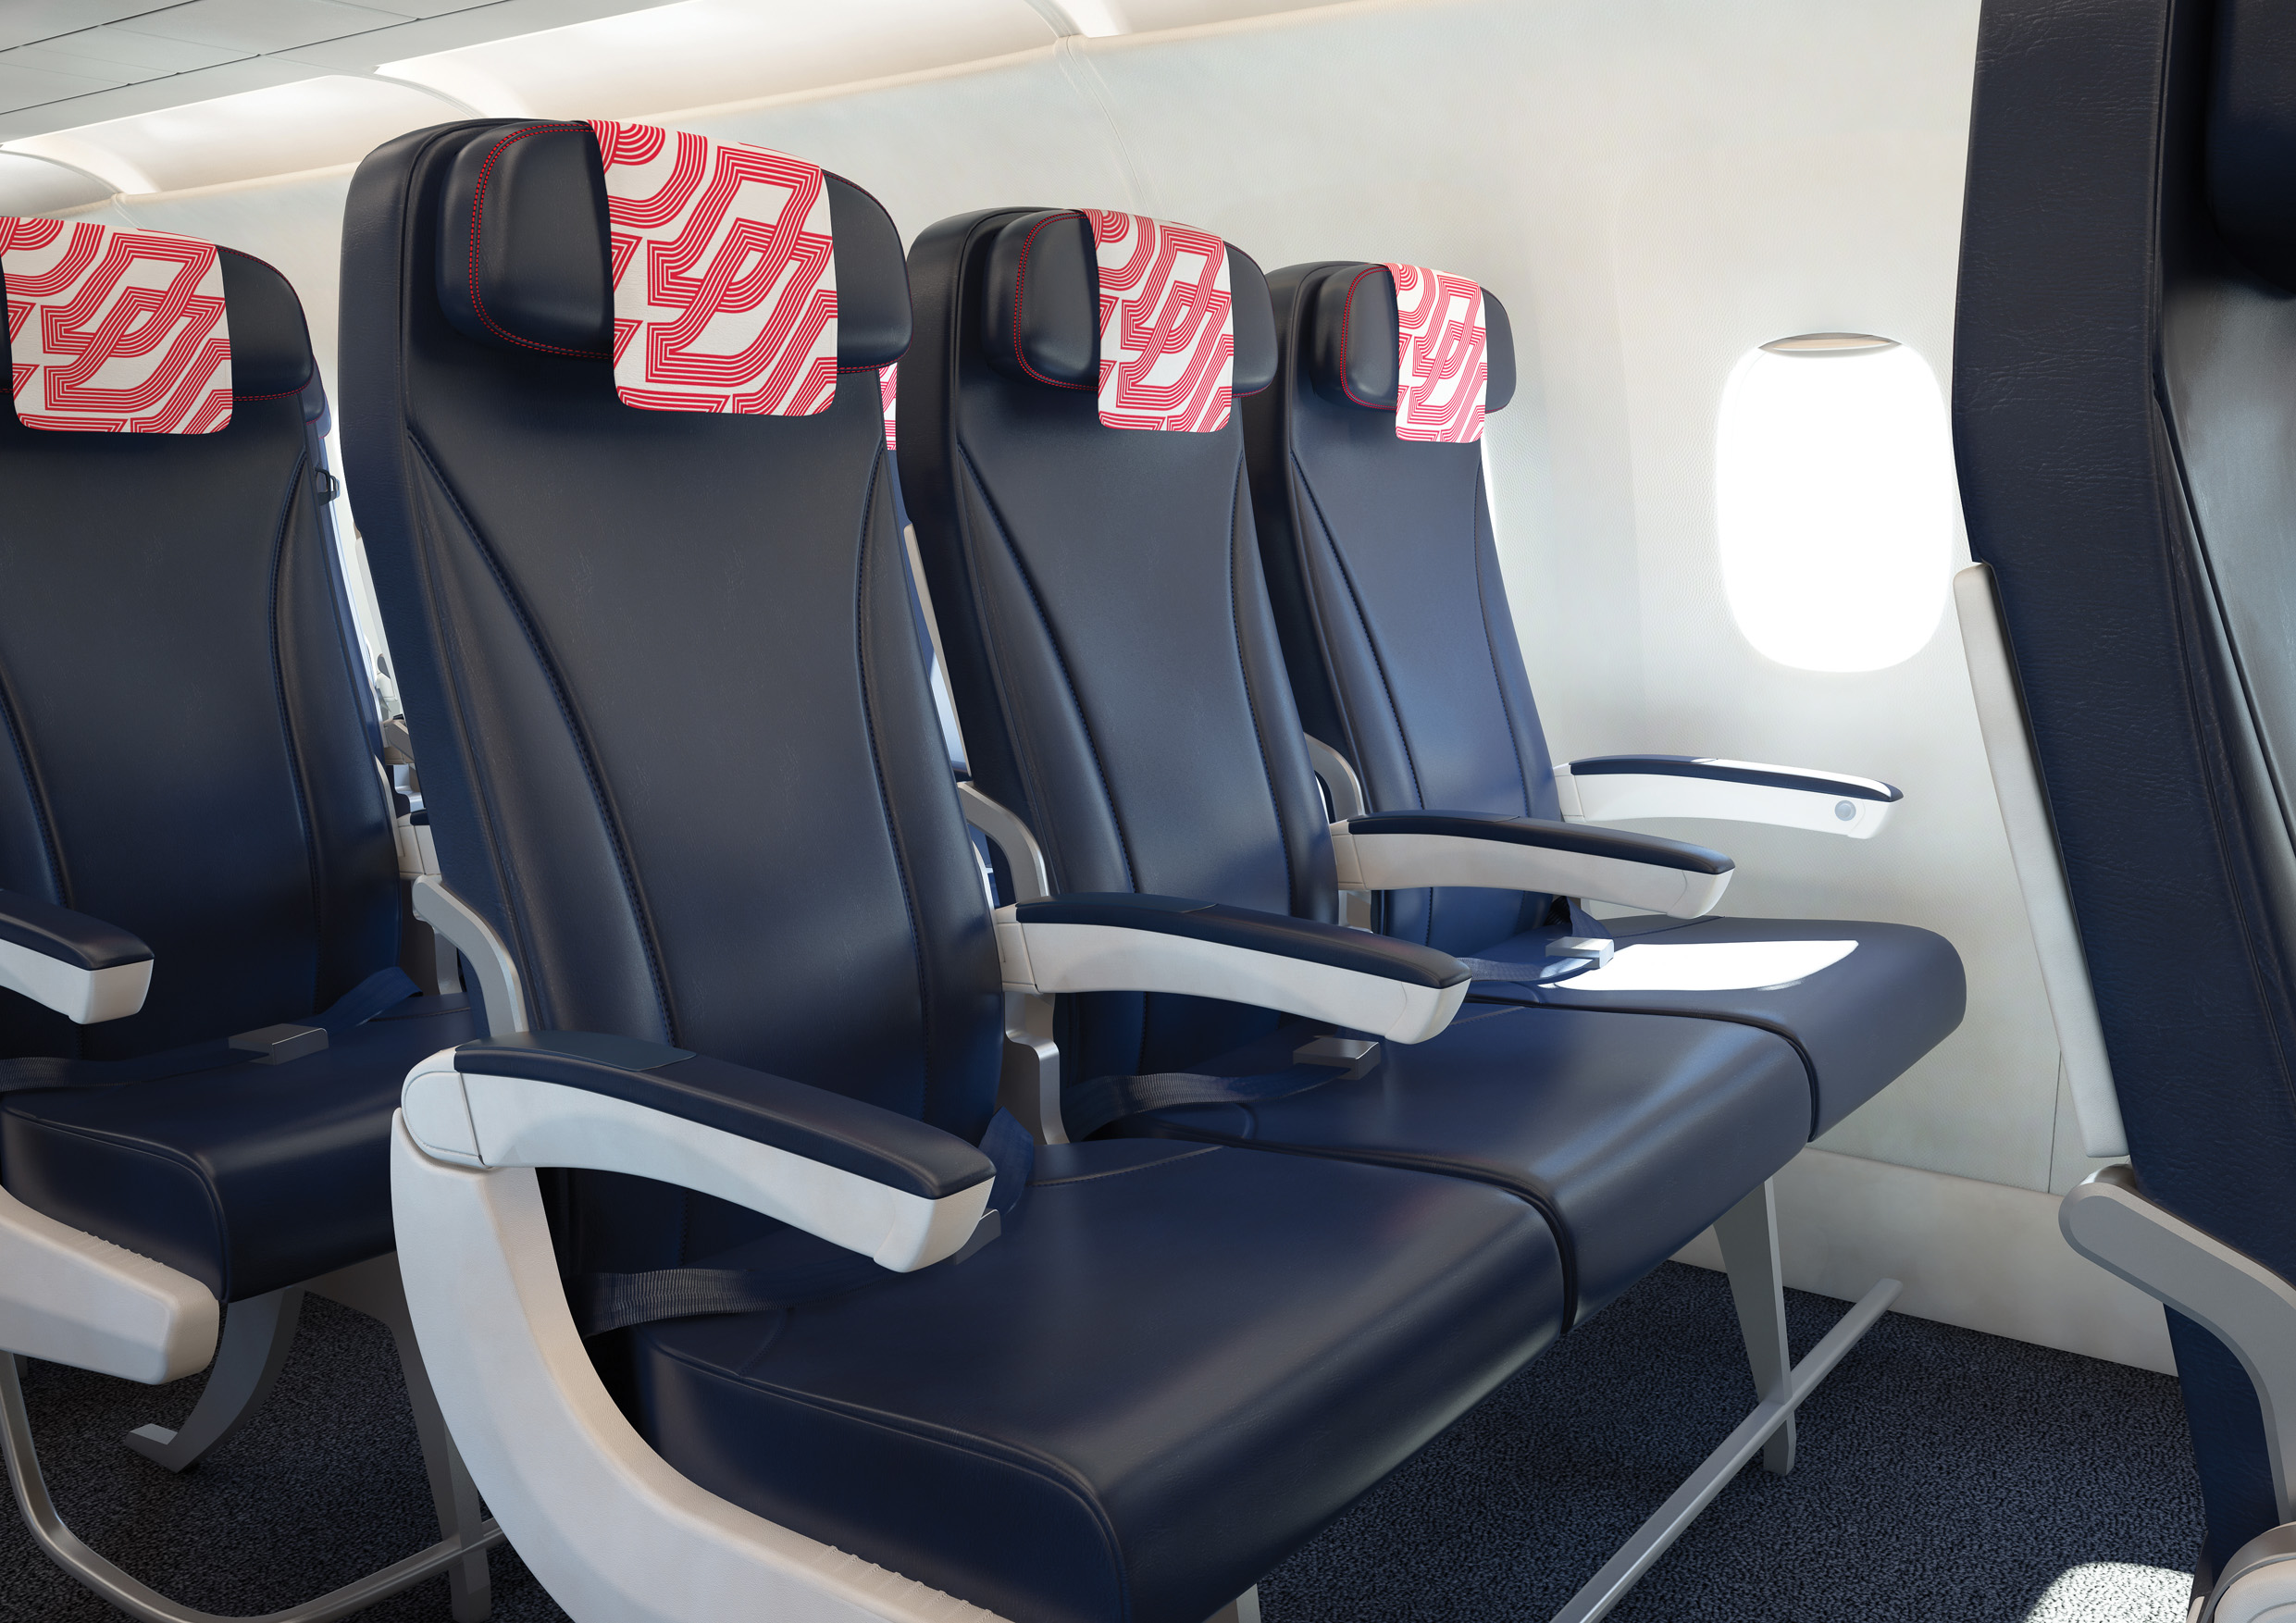 Air France propose une visite virtuelle de ses nouvelles cabines moyen-courrier